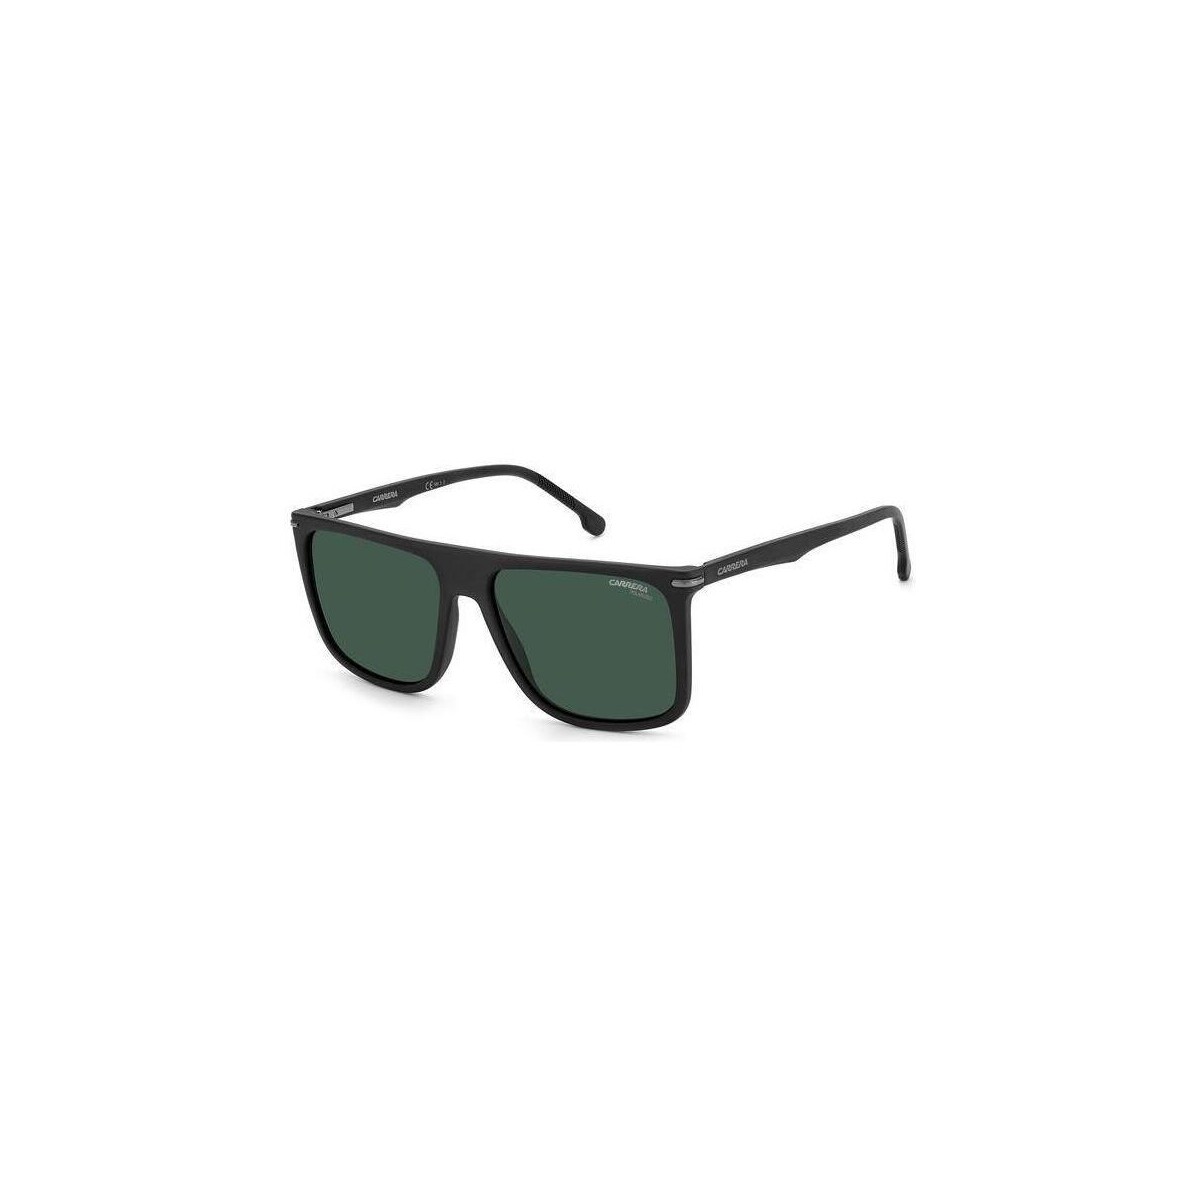 Orologi & Gioielli Uomo Occhiali da sole Carrera 278/S Occhiali da sole, Nero-opaco/Verde, 58 mm Altri